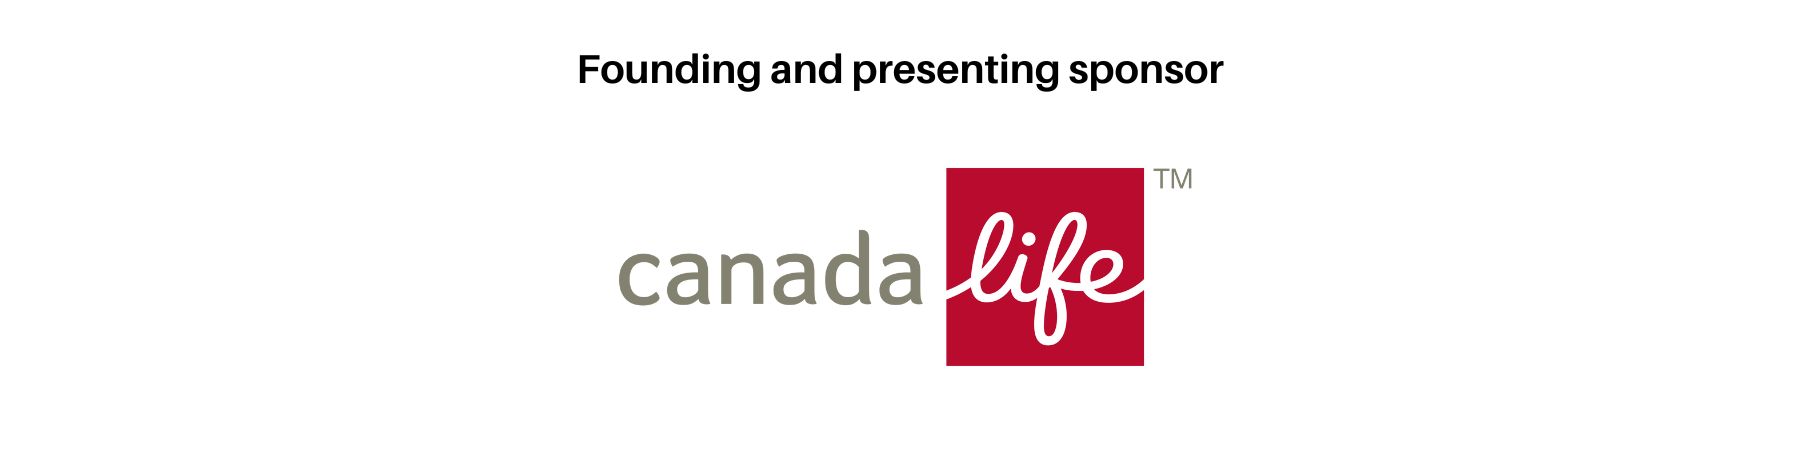 Sponsor logo: Canada Life